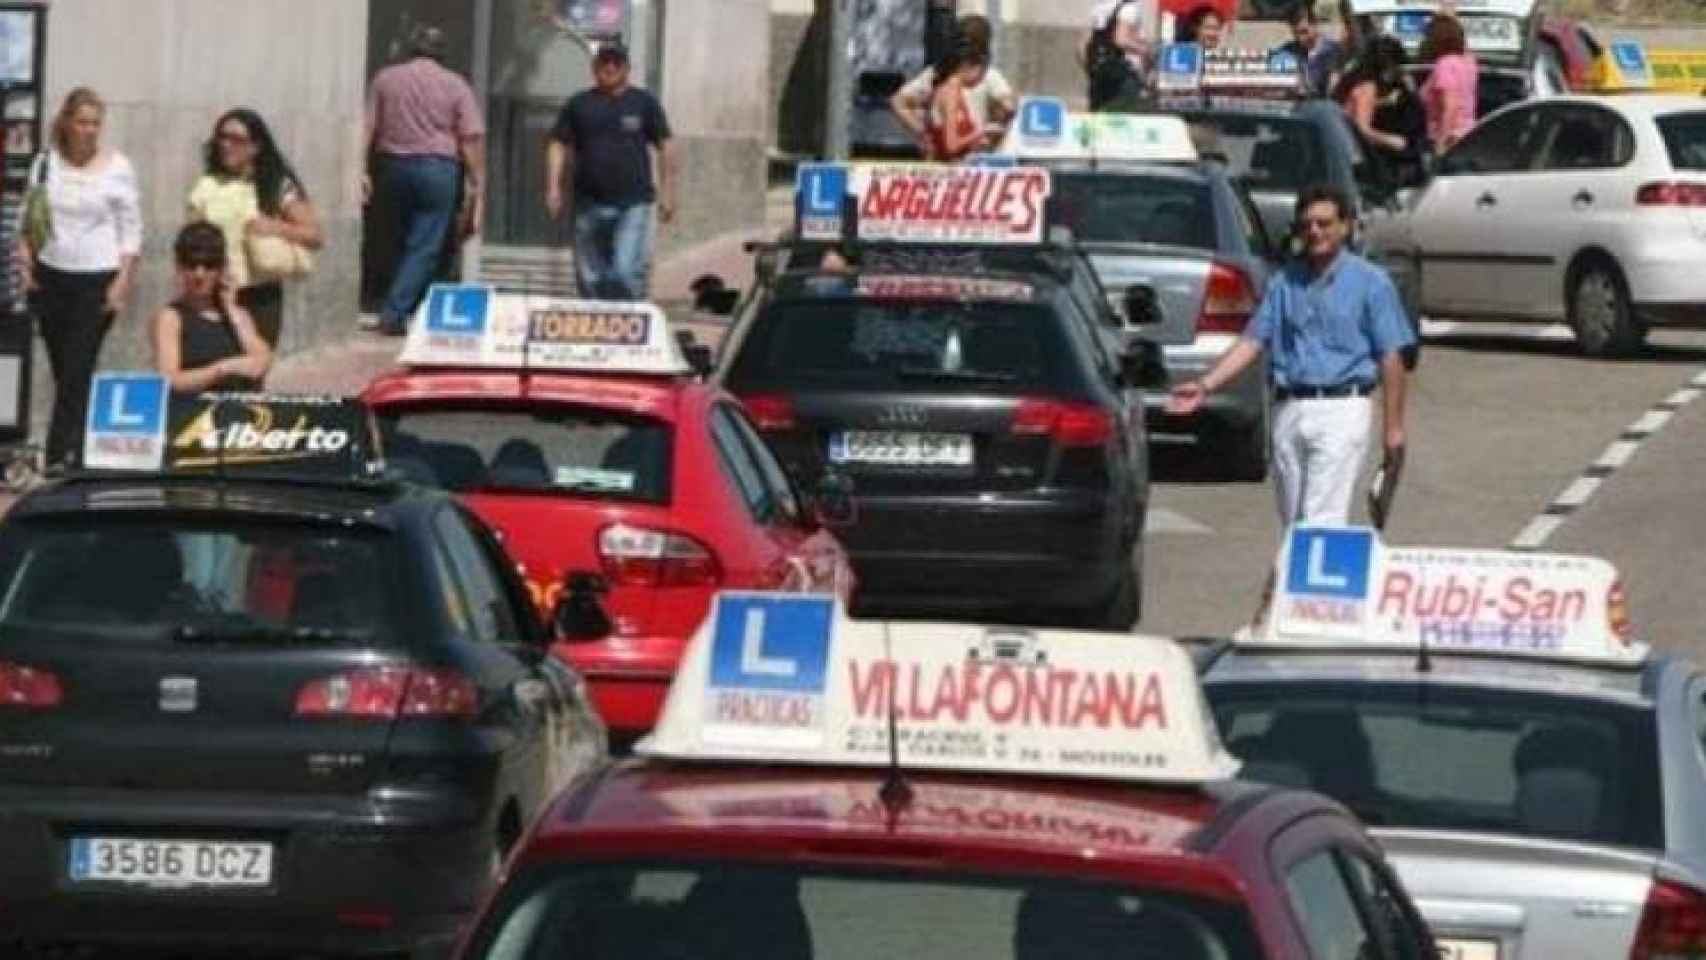 600 examinadores para atender a 9000 autoescuelas en España.